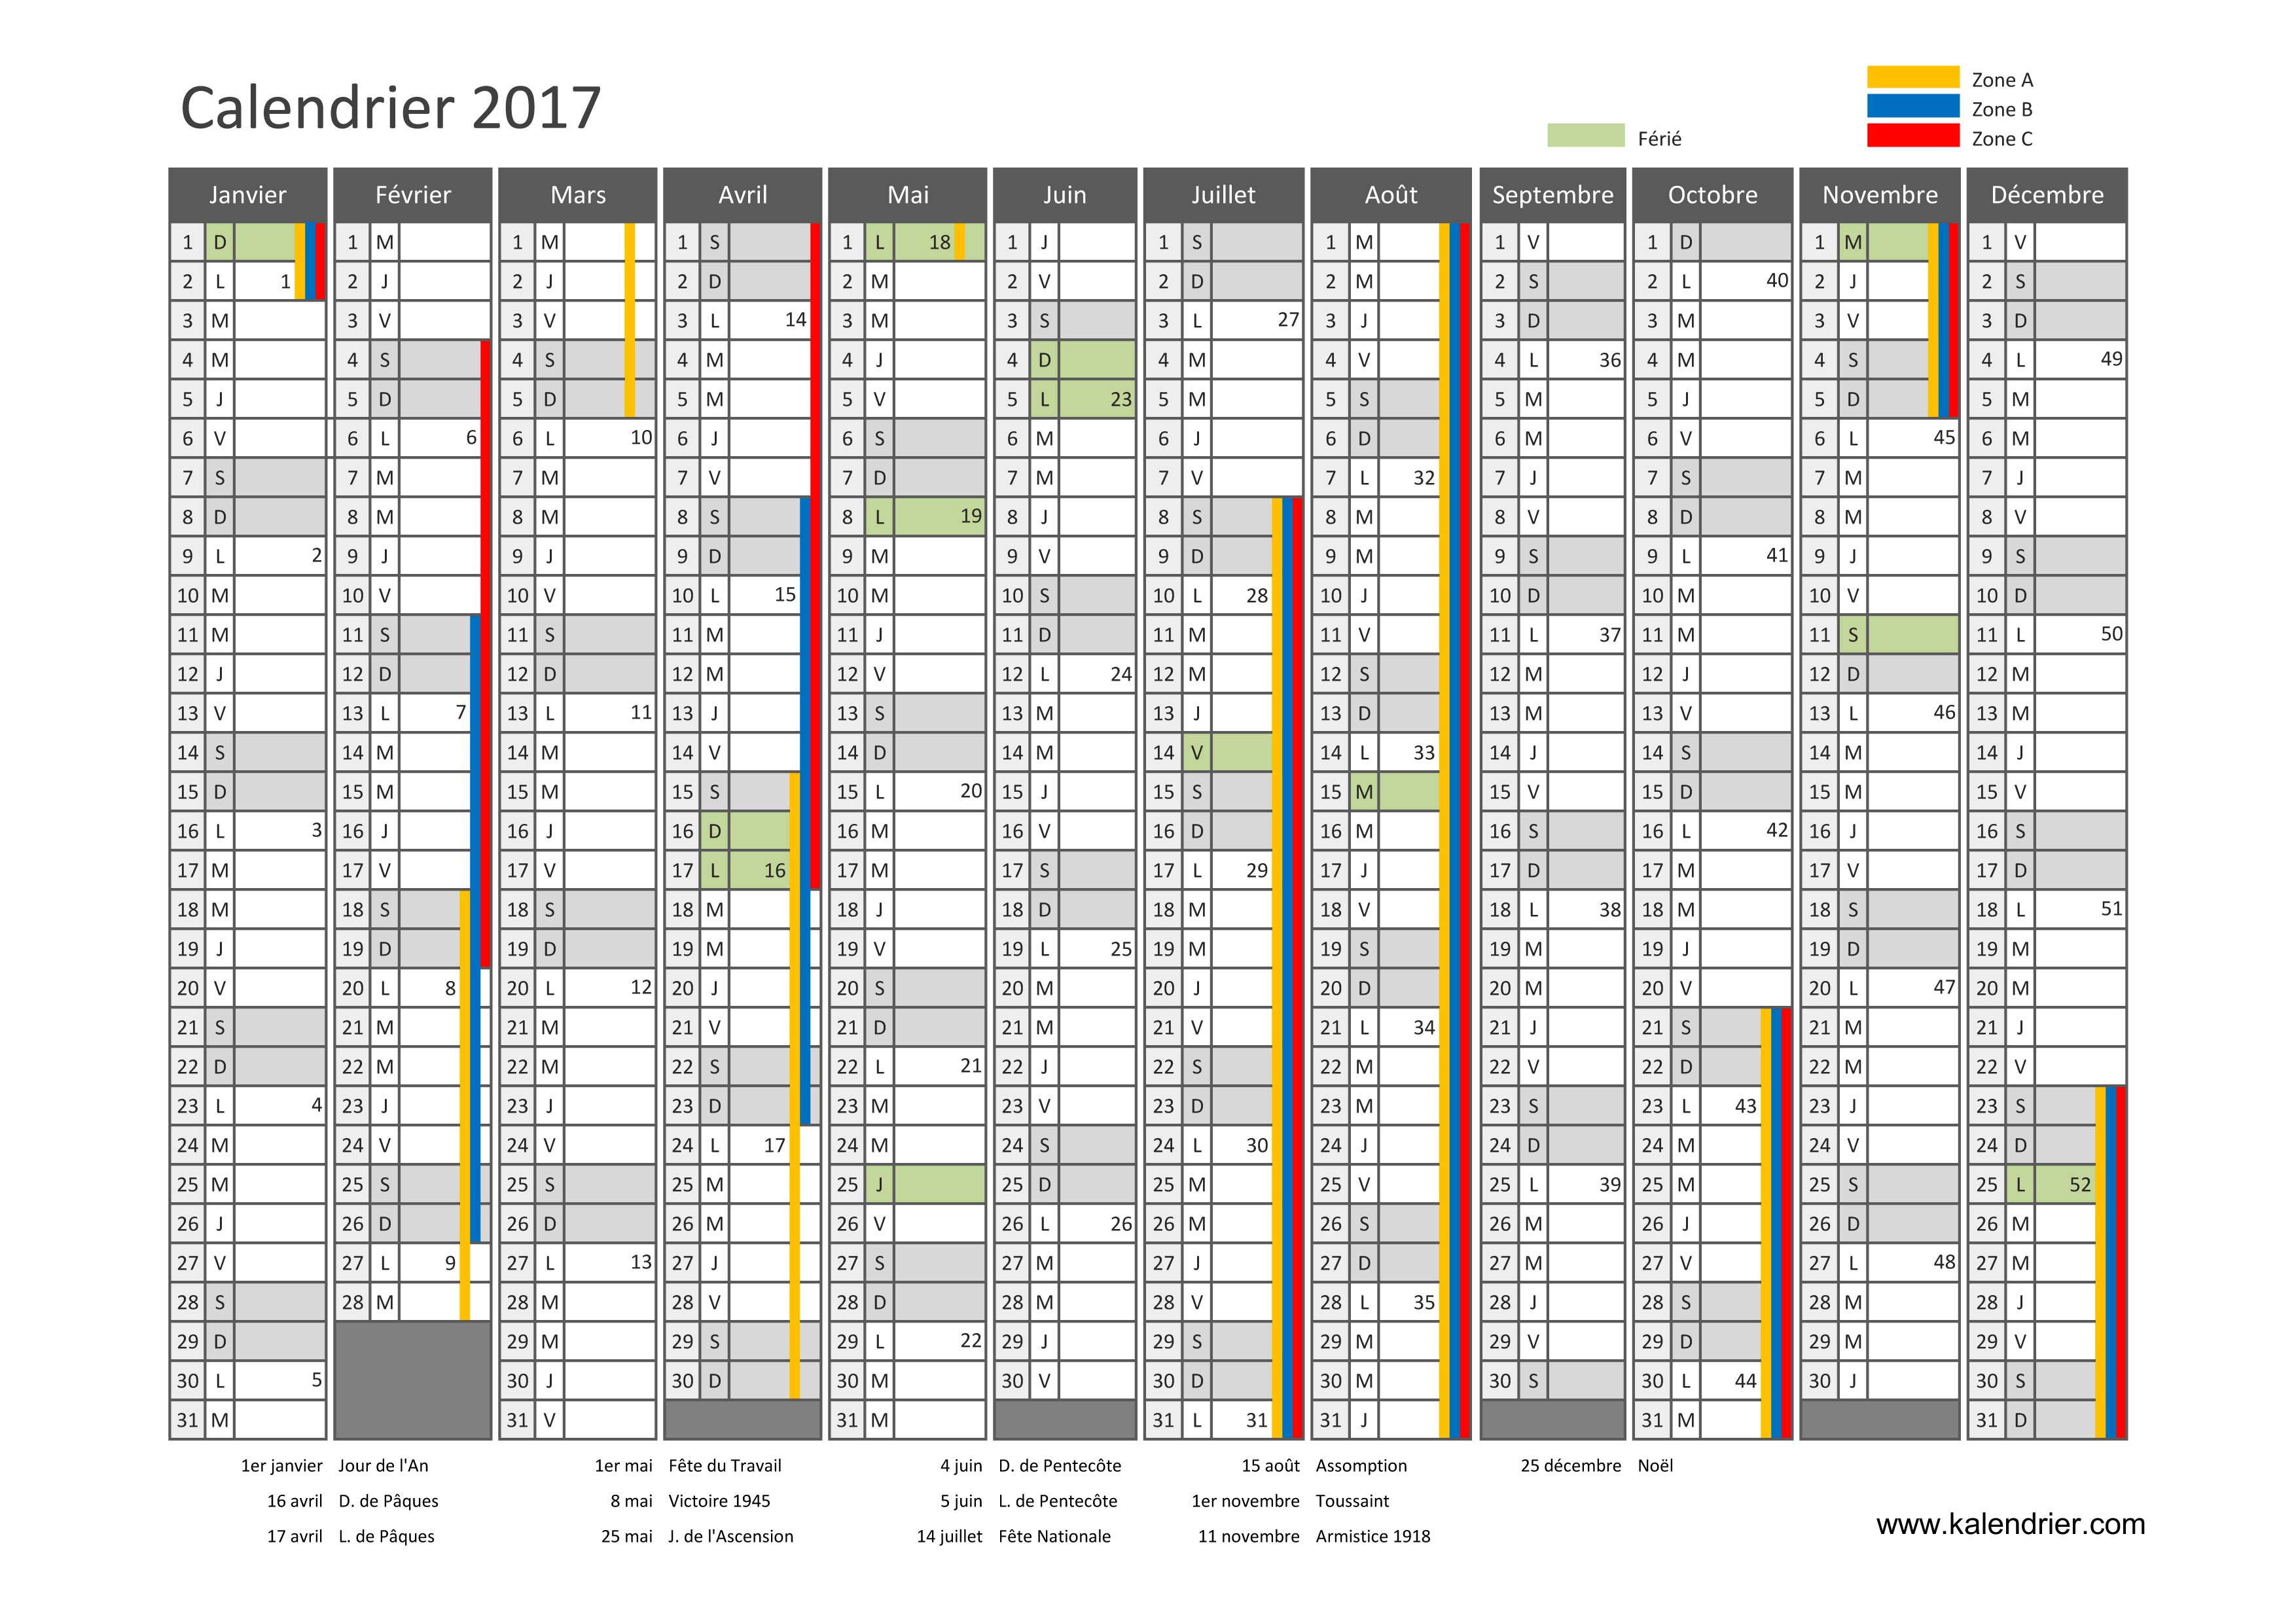 Calendrier annuel 2017 avec jours fériés